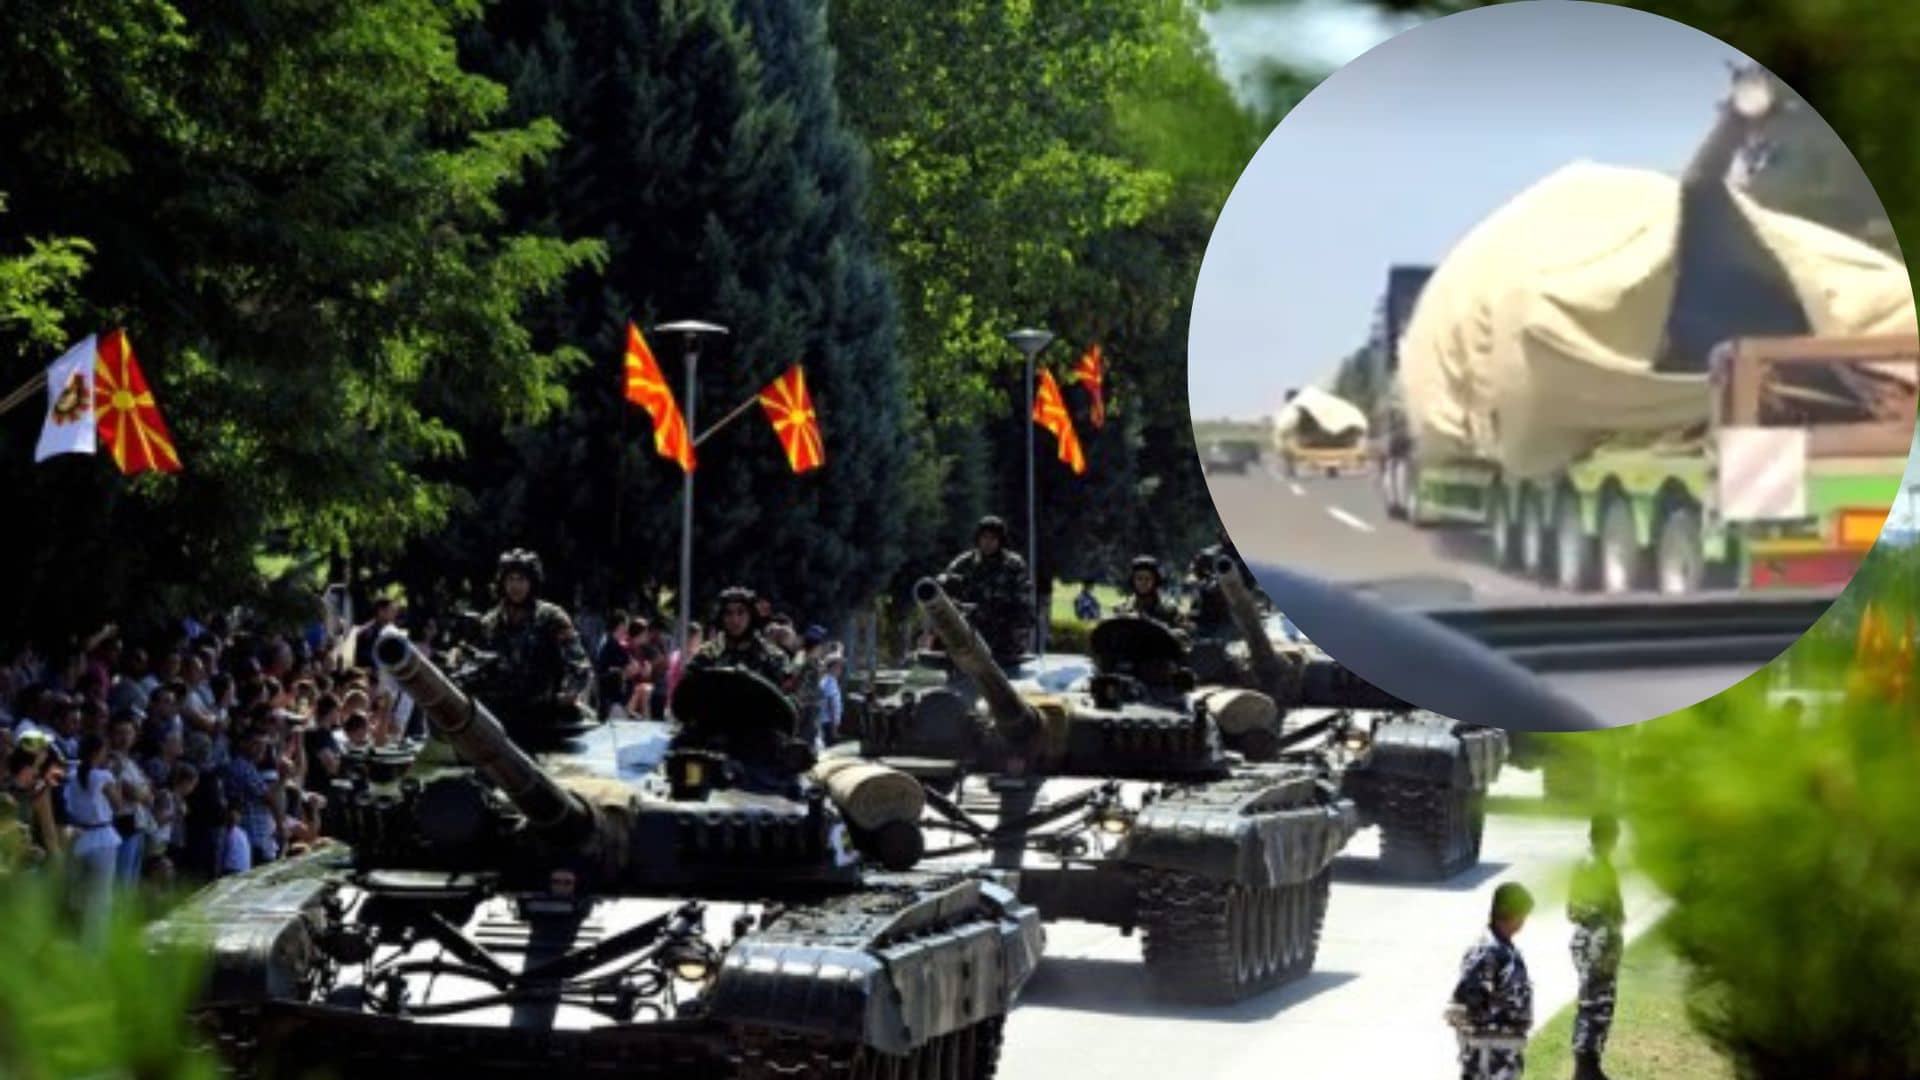 Северная Македония передает Украине советские танки Т-72